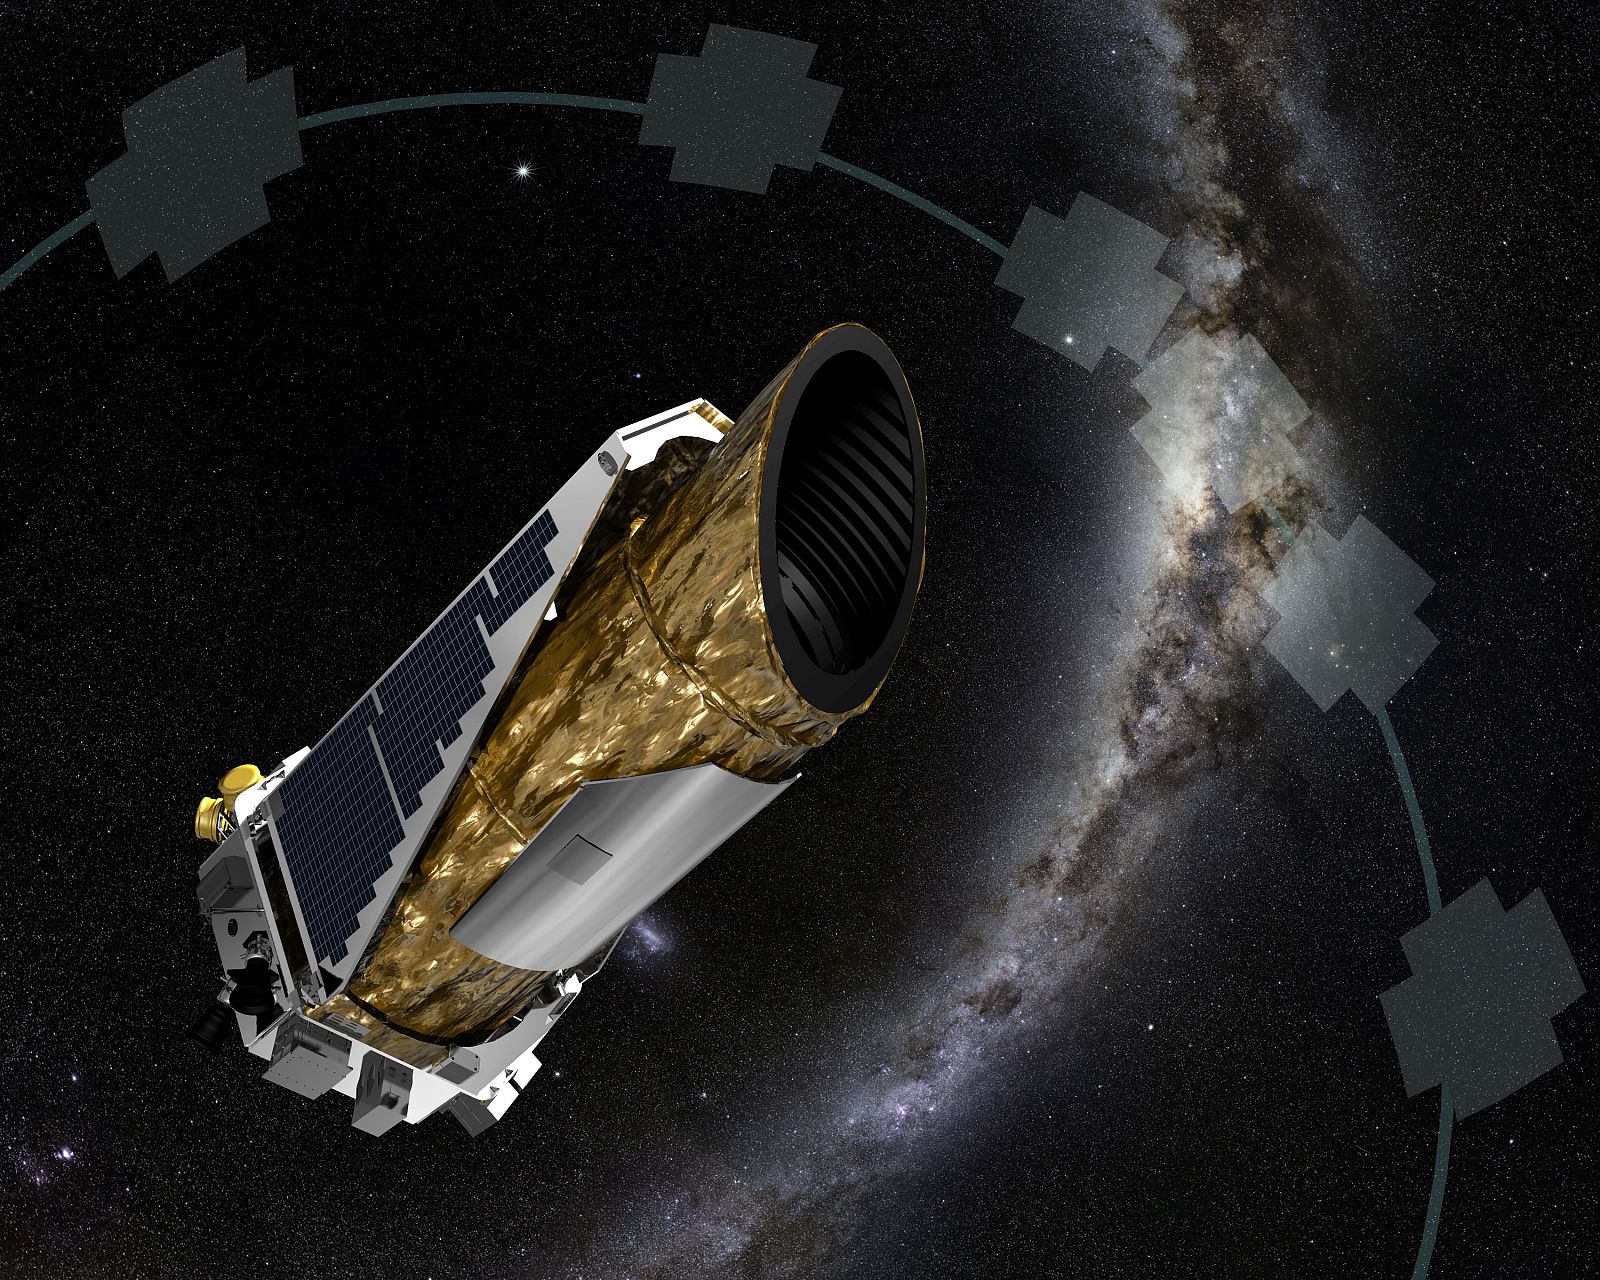 Impresión artística del telescopio espacial Kepler y de las zonas del espacio que va observando en la misión K2